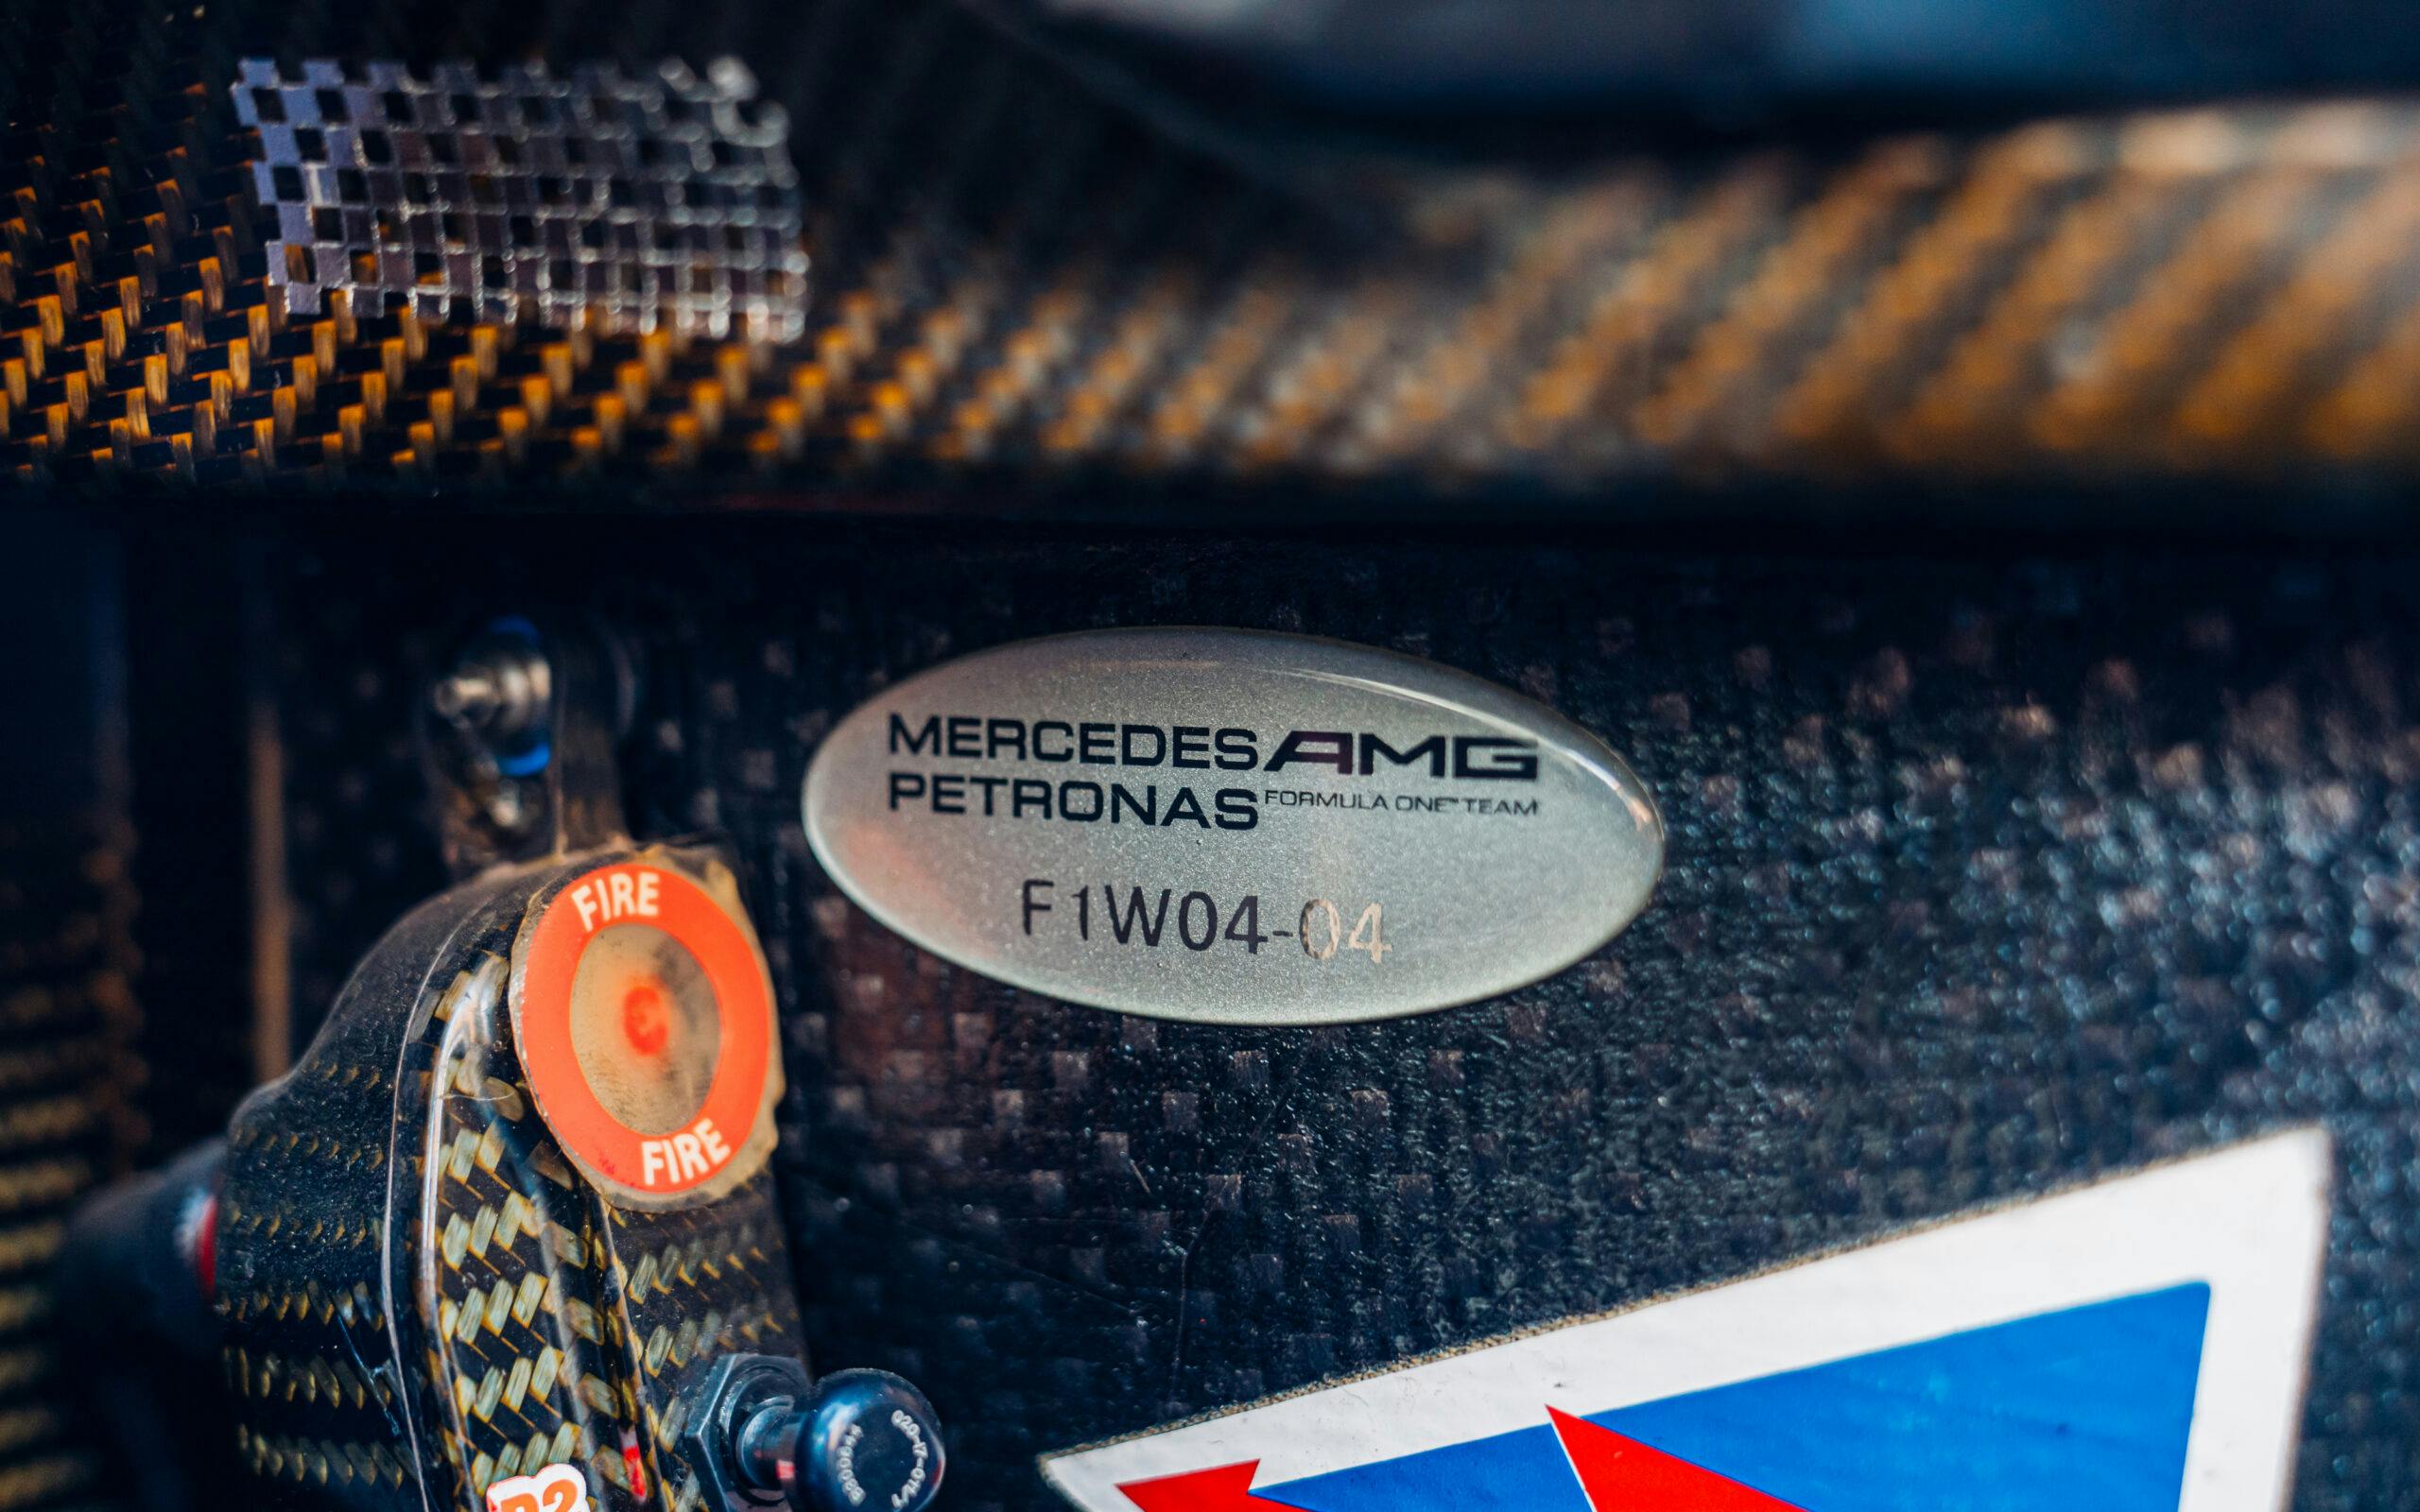 2013-Mercedes-AMG-Petronas-F1 car code detail